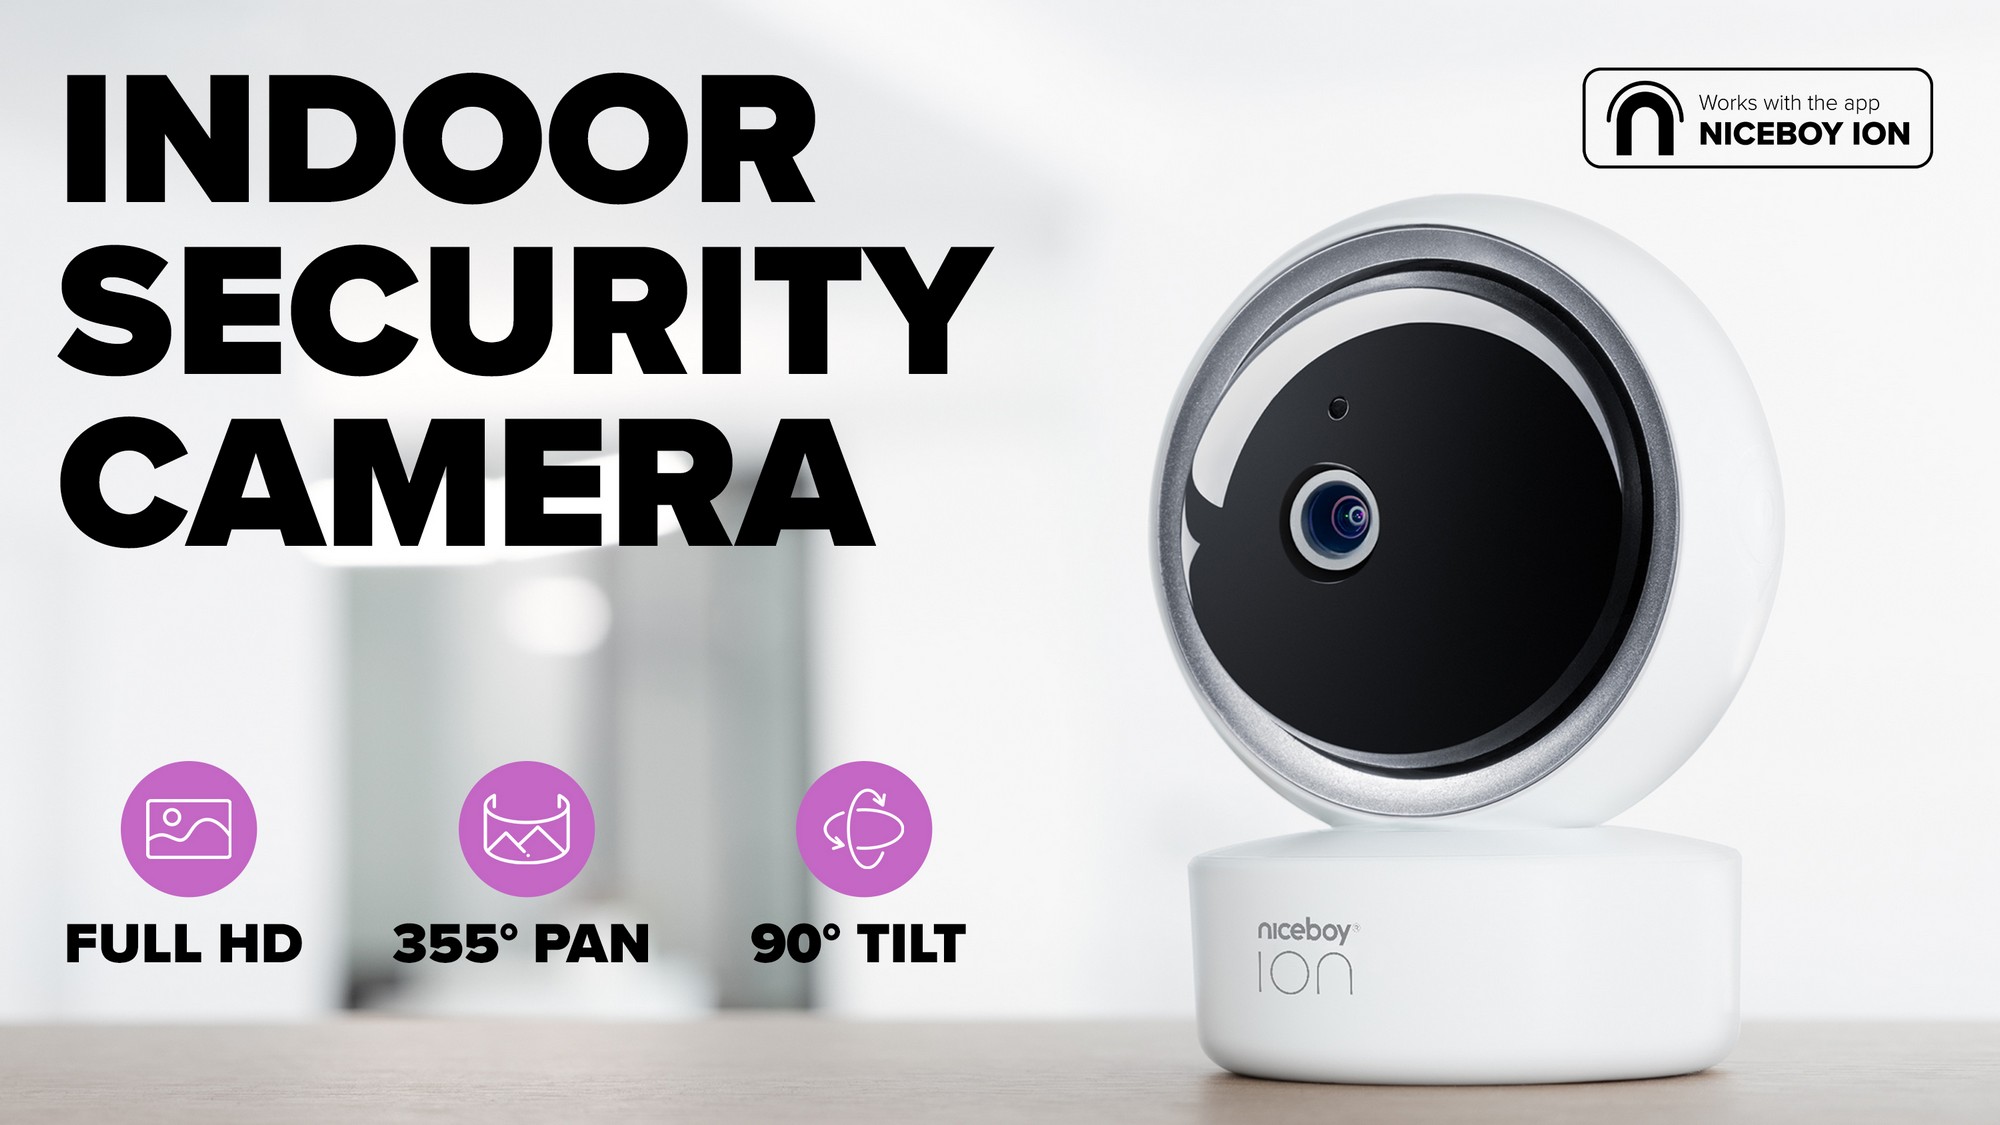 Bezpečnostní vnitřní kamera Niceboy ION Home Security Camera s Full HD rozlišením a širokým záběrem